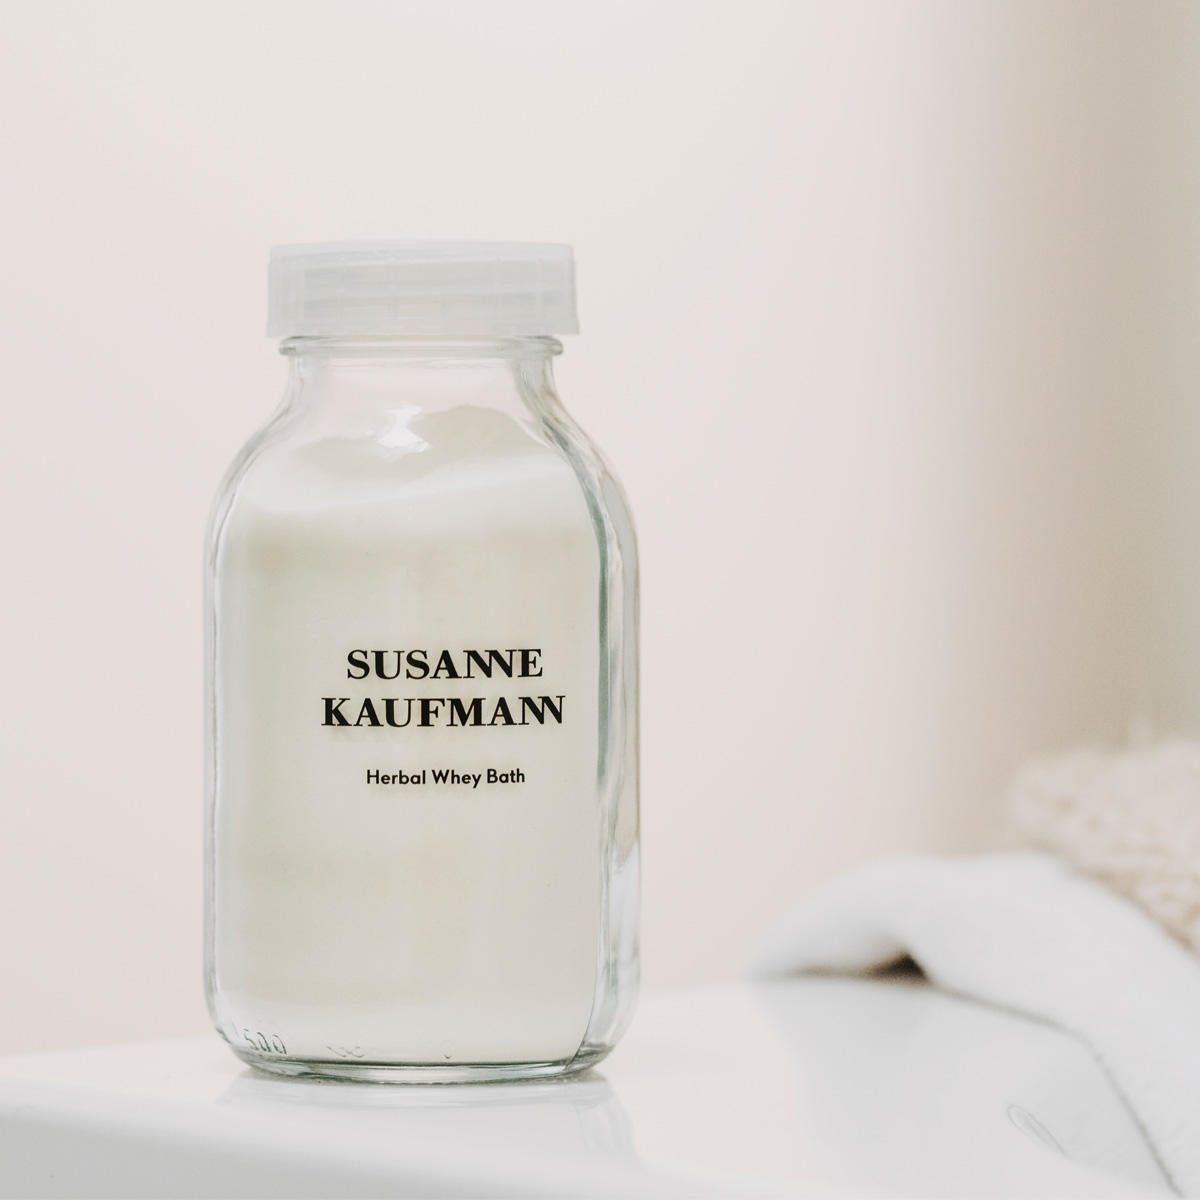 Susanne Kaufmann Kräuter-Molkebad pflegend - Herbal Whey Bath 300 g - 2